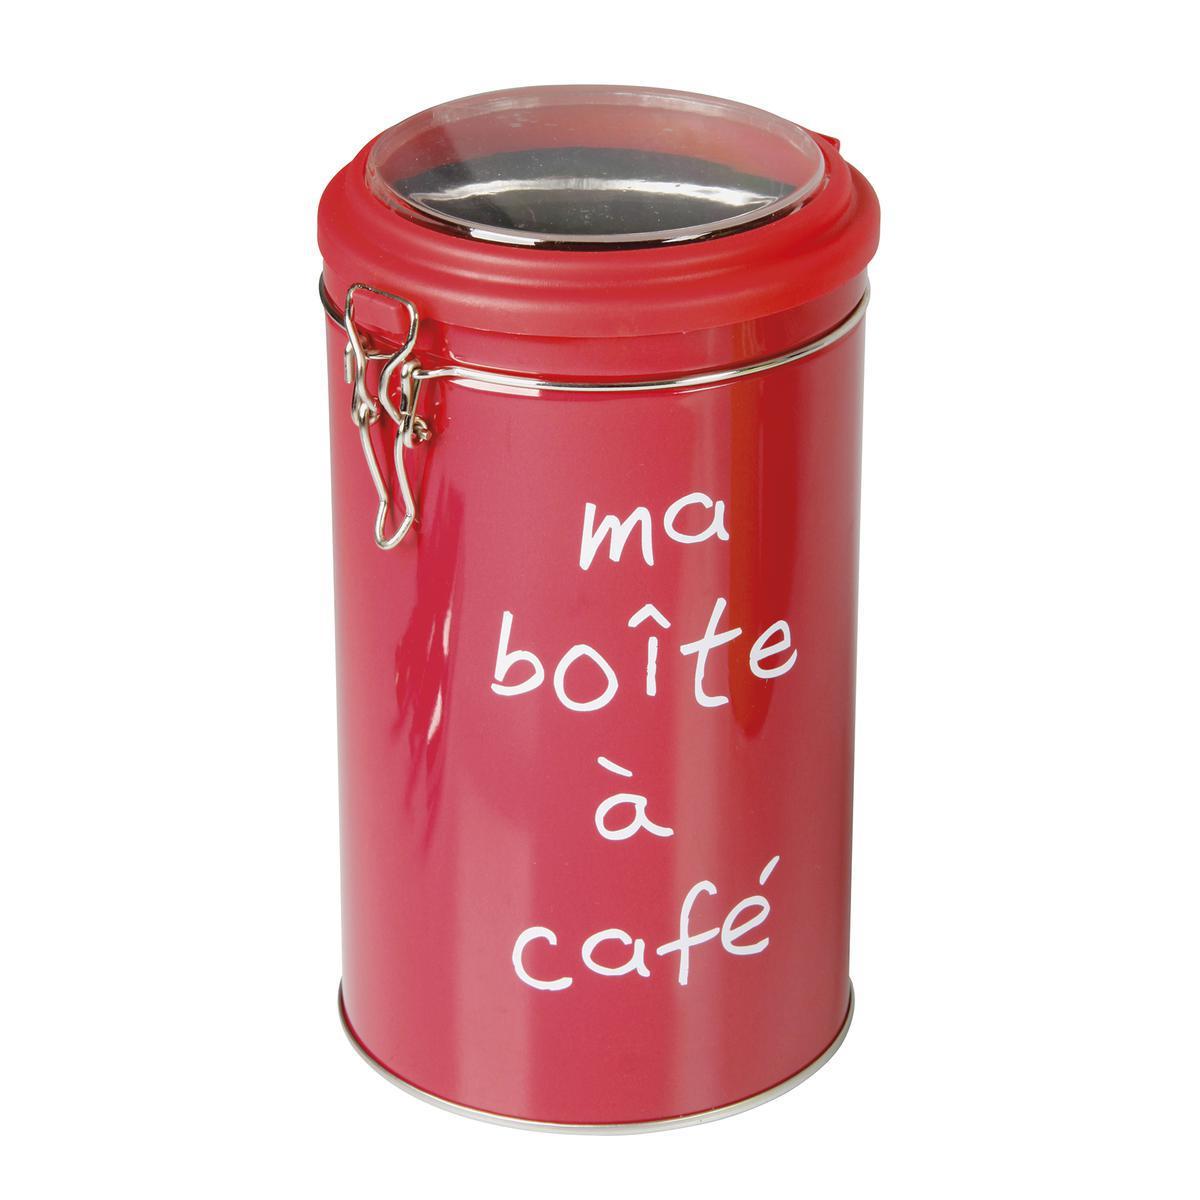 Boîte à café ronde - Acier inoxydable - Diamètre 11 x 19,5 cm - Multicolore